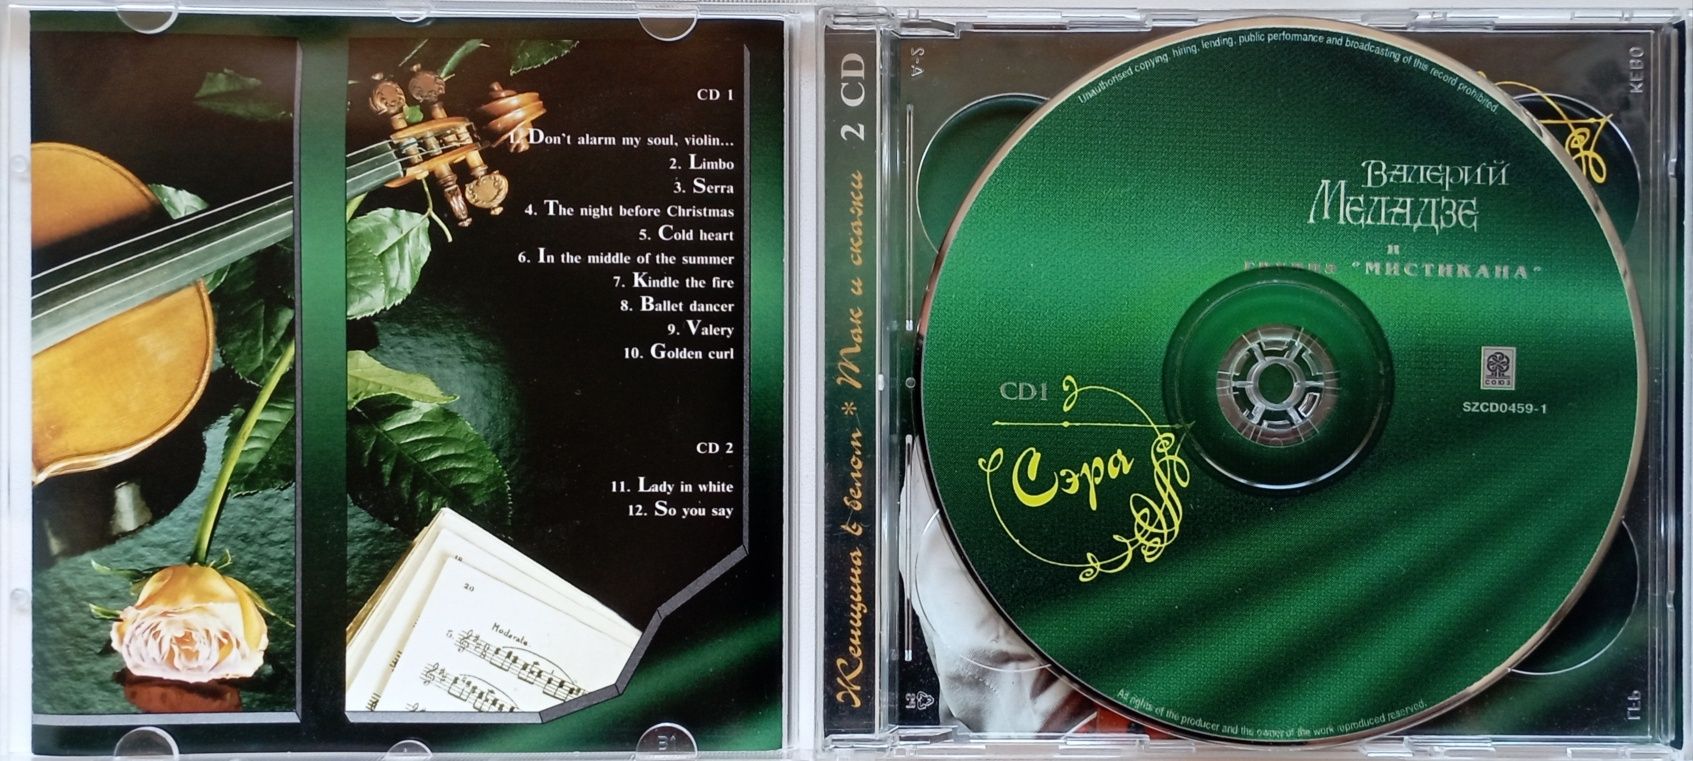 Валерий Меладзе cd «Сэ́ра» 1995 год